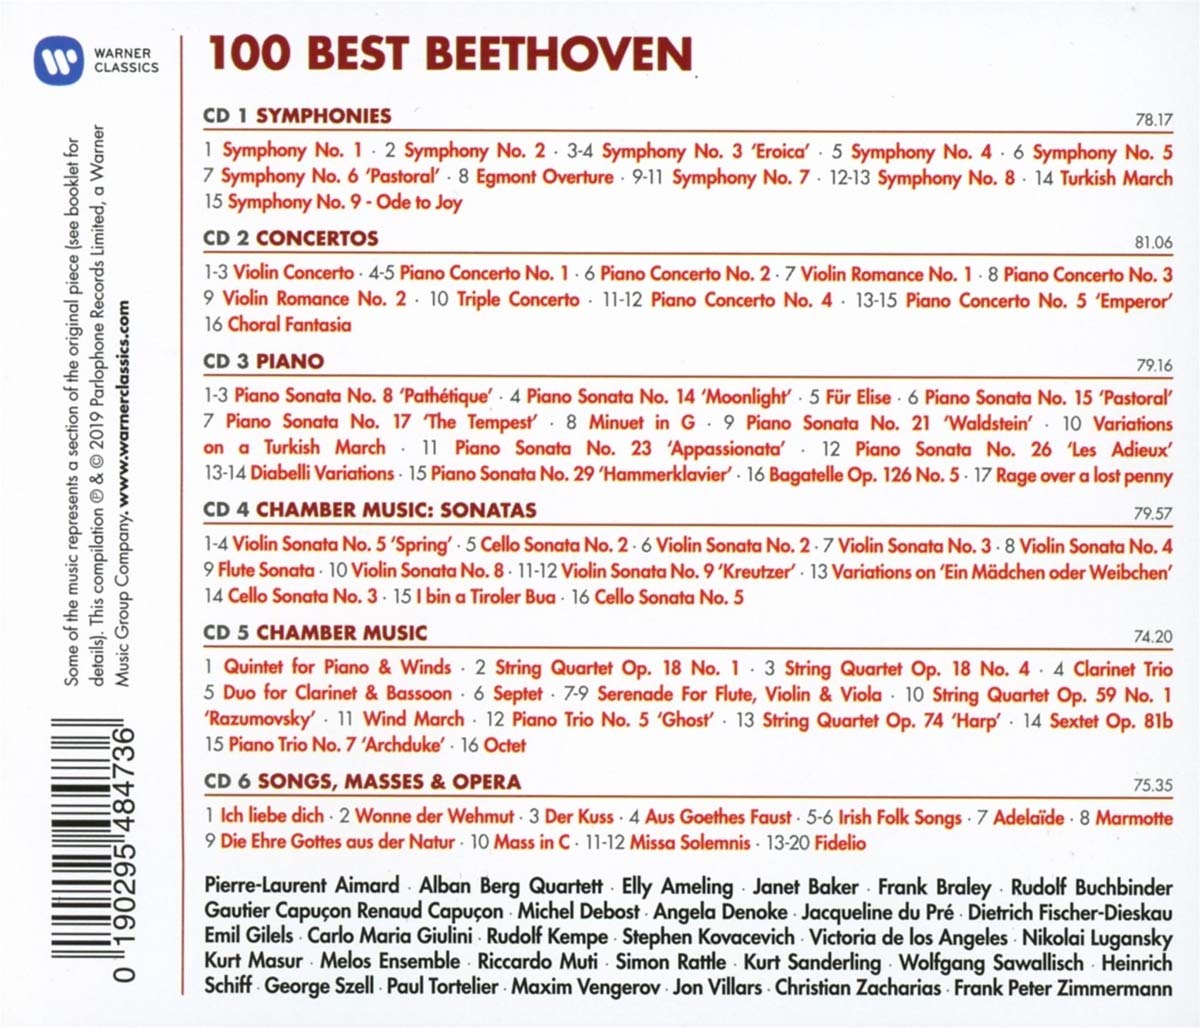 베토벤 베스트 100 (100 Best Beethoven)